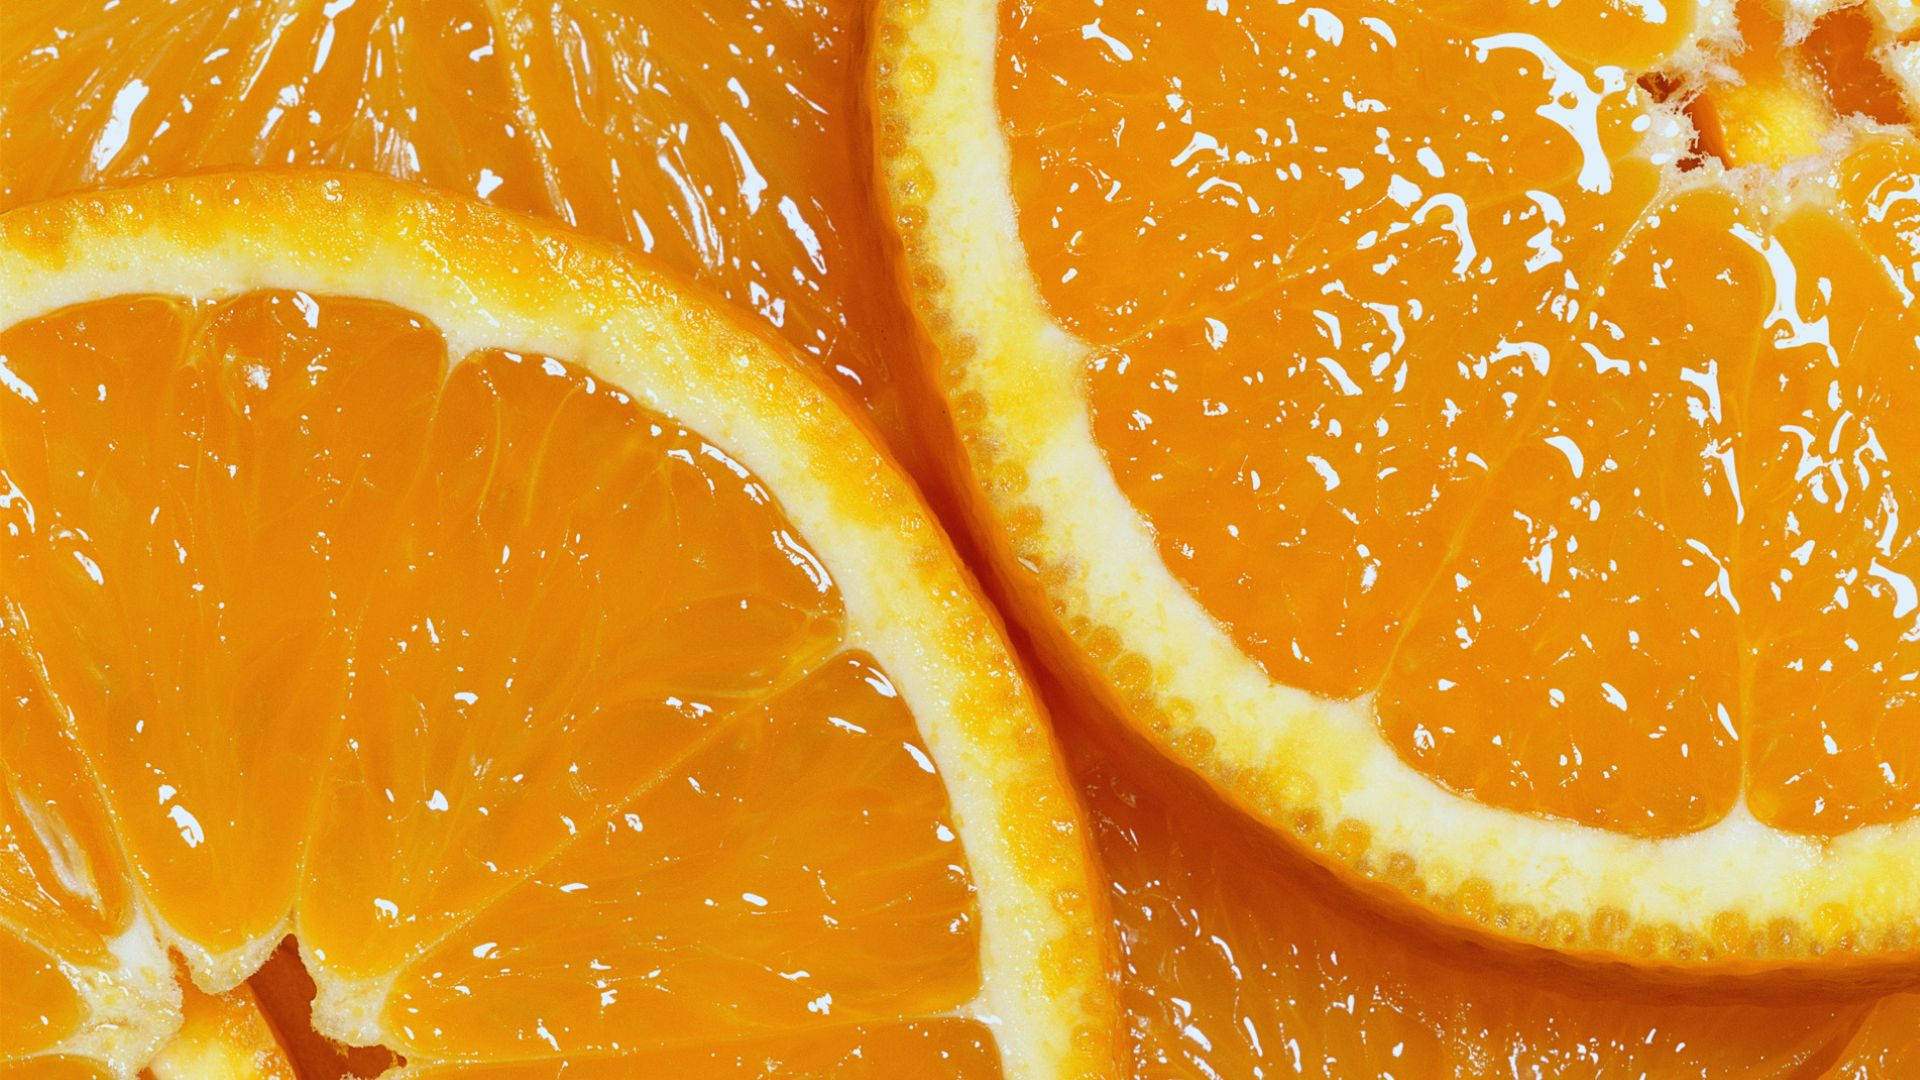 Mouthwatering Orange Fruit